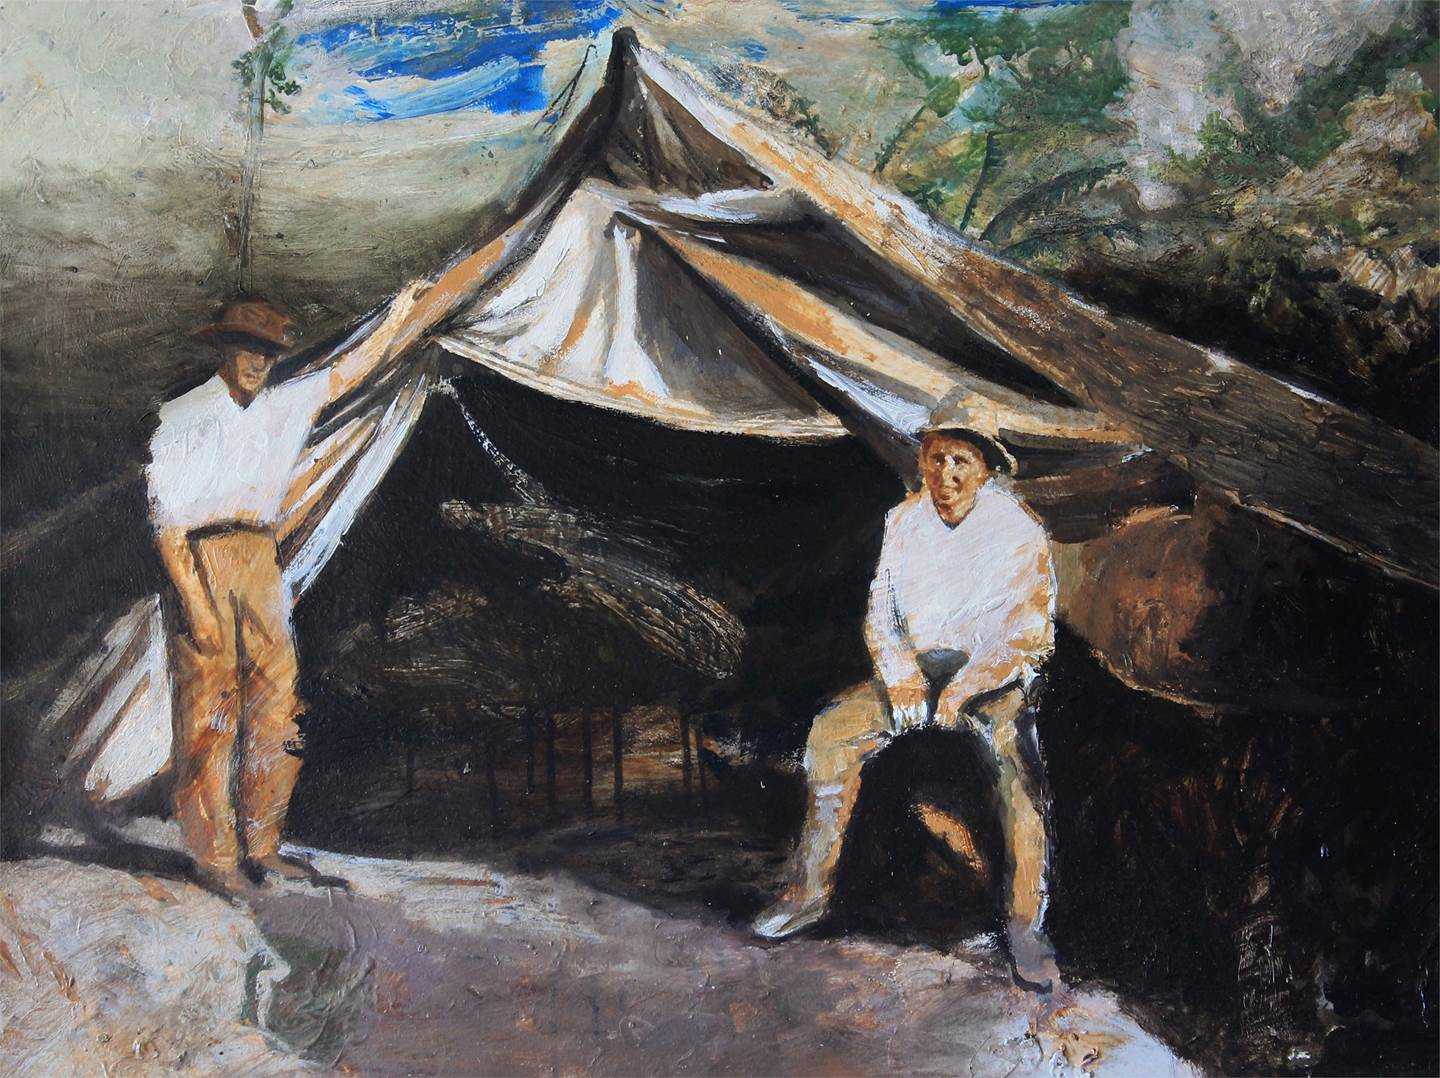 Fundos buracos, o capeado e o incognoscível , original   Painting by Ludgero Almeida